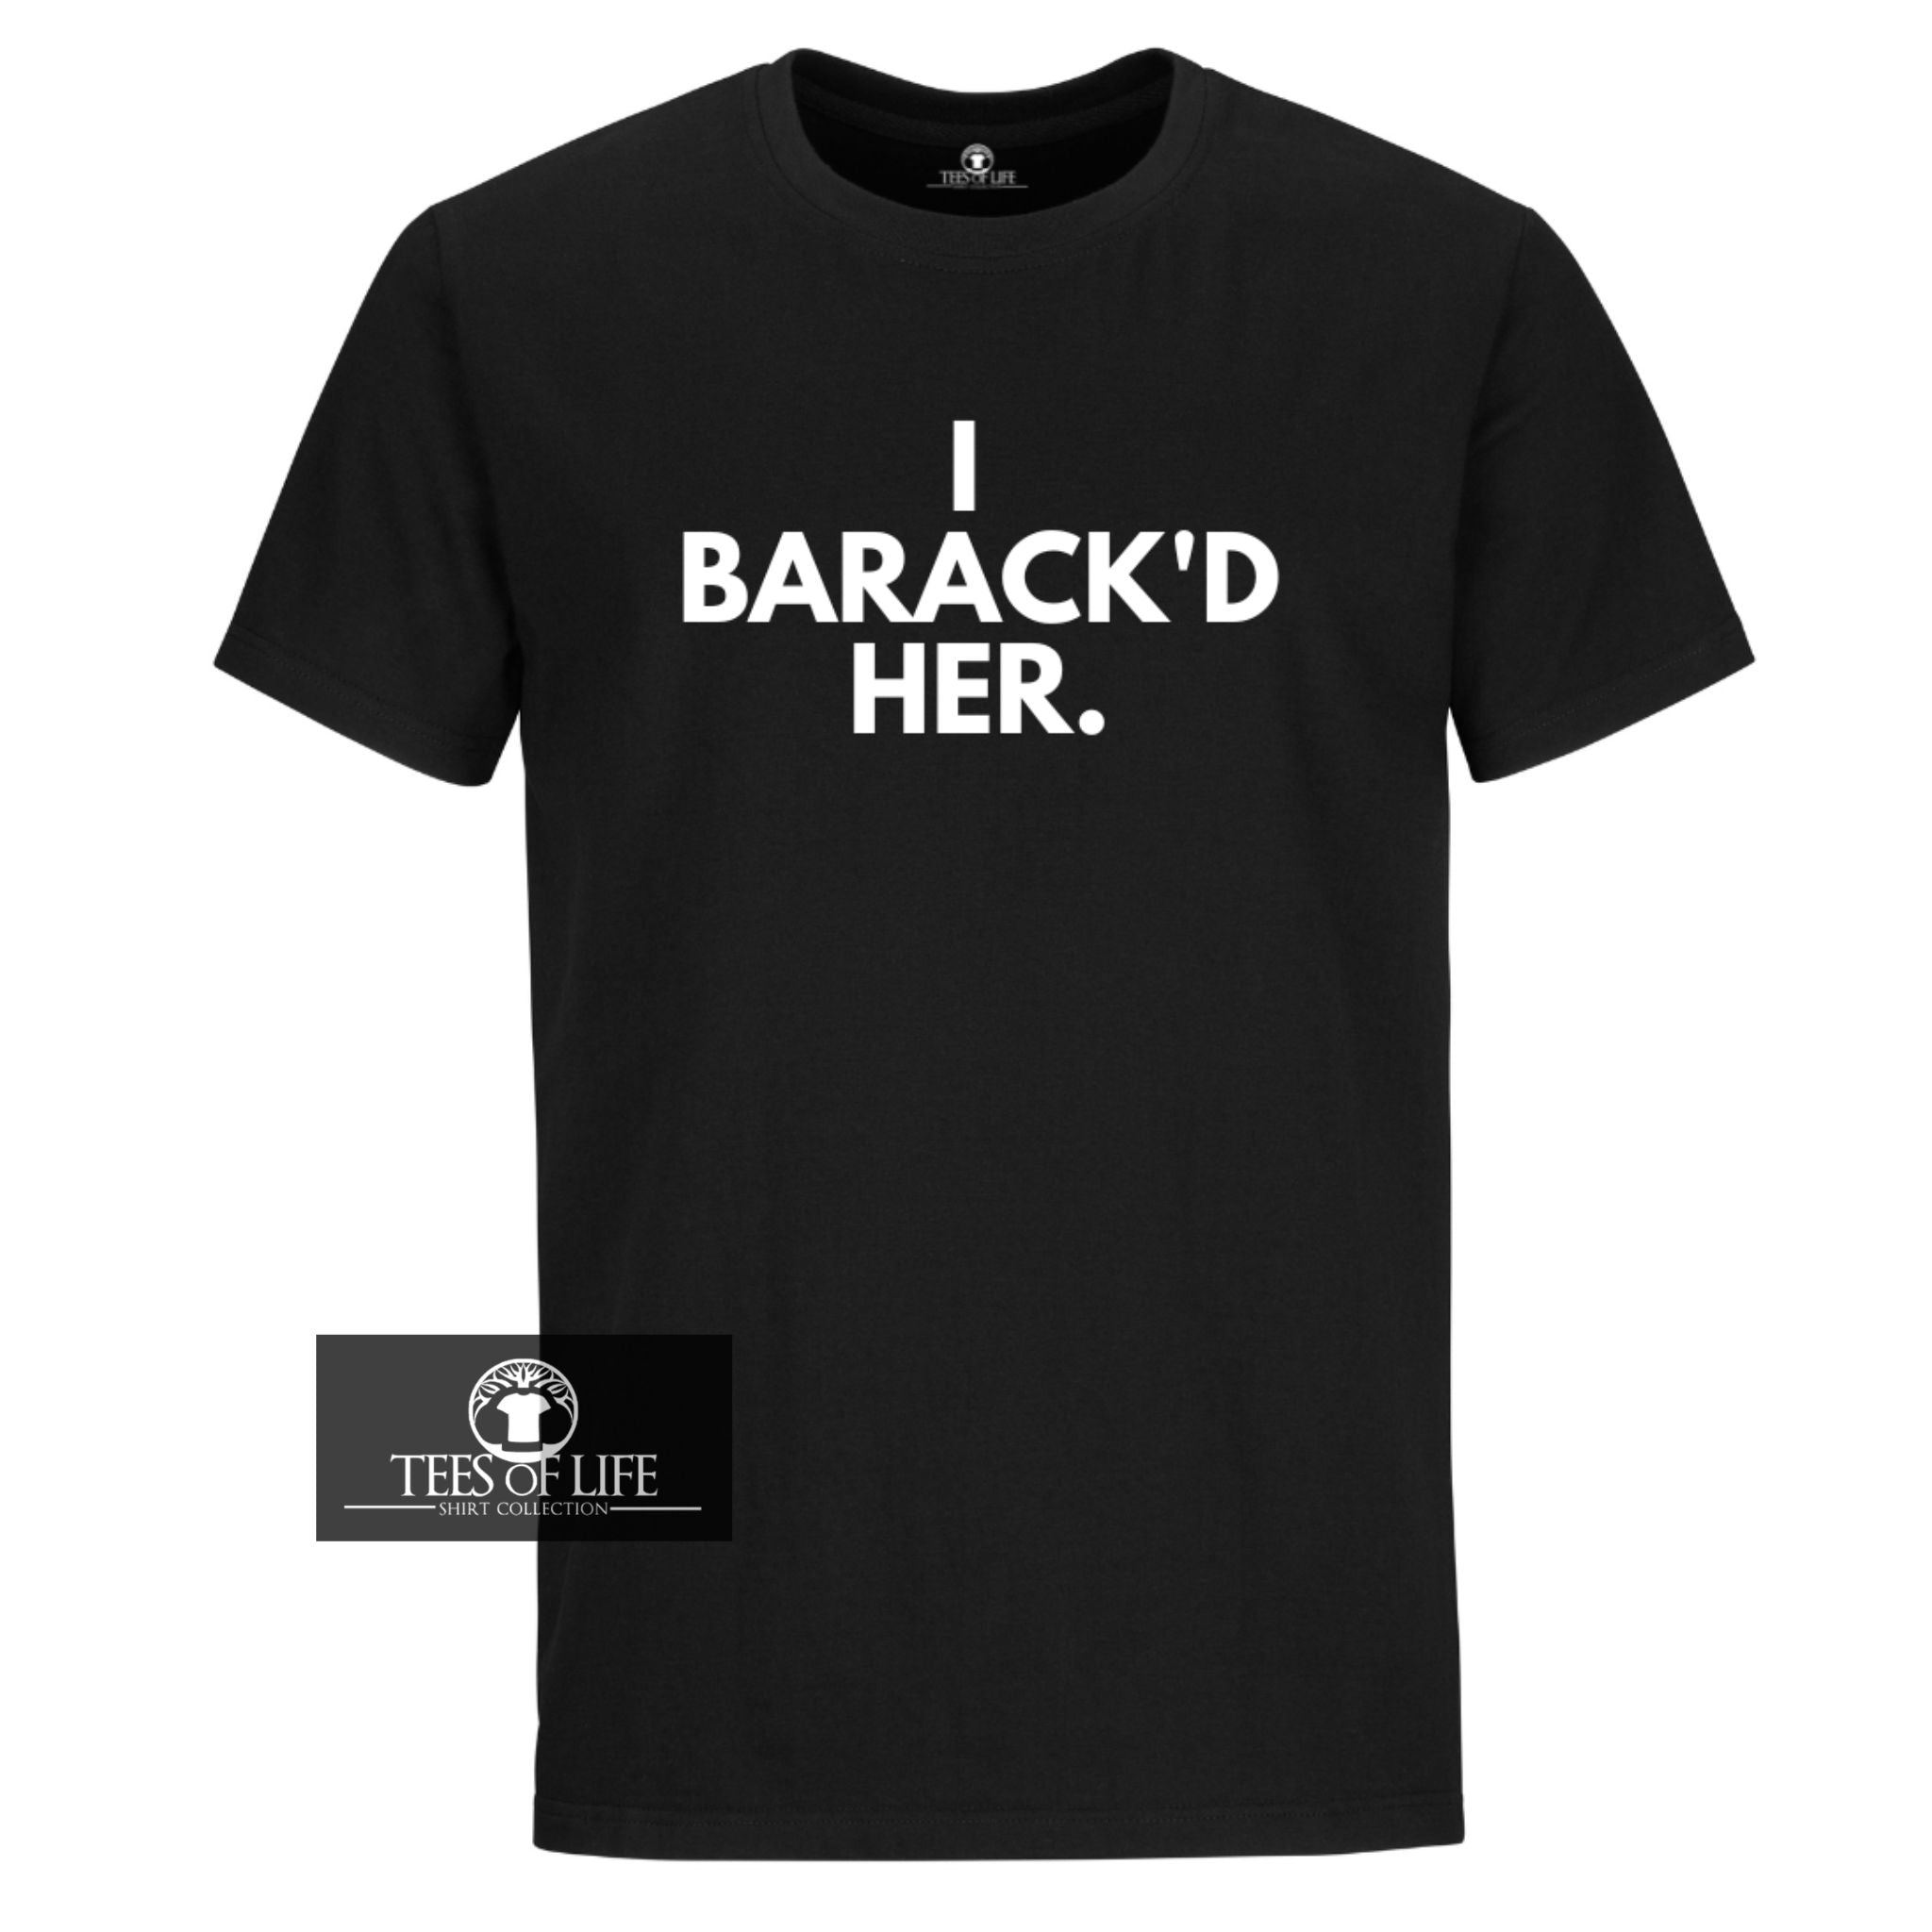 I Barack'd Her Unisex T-Shirt